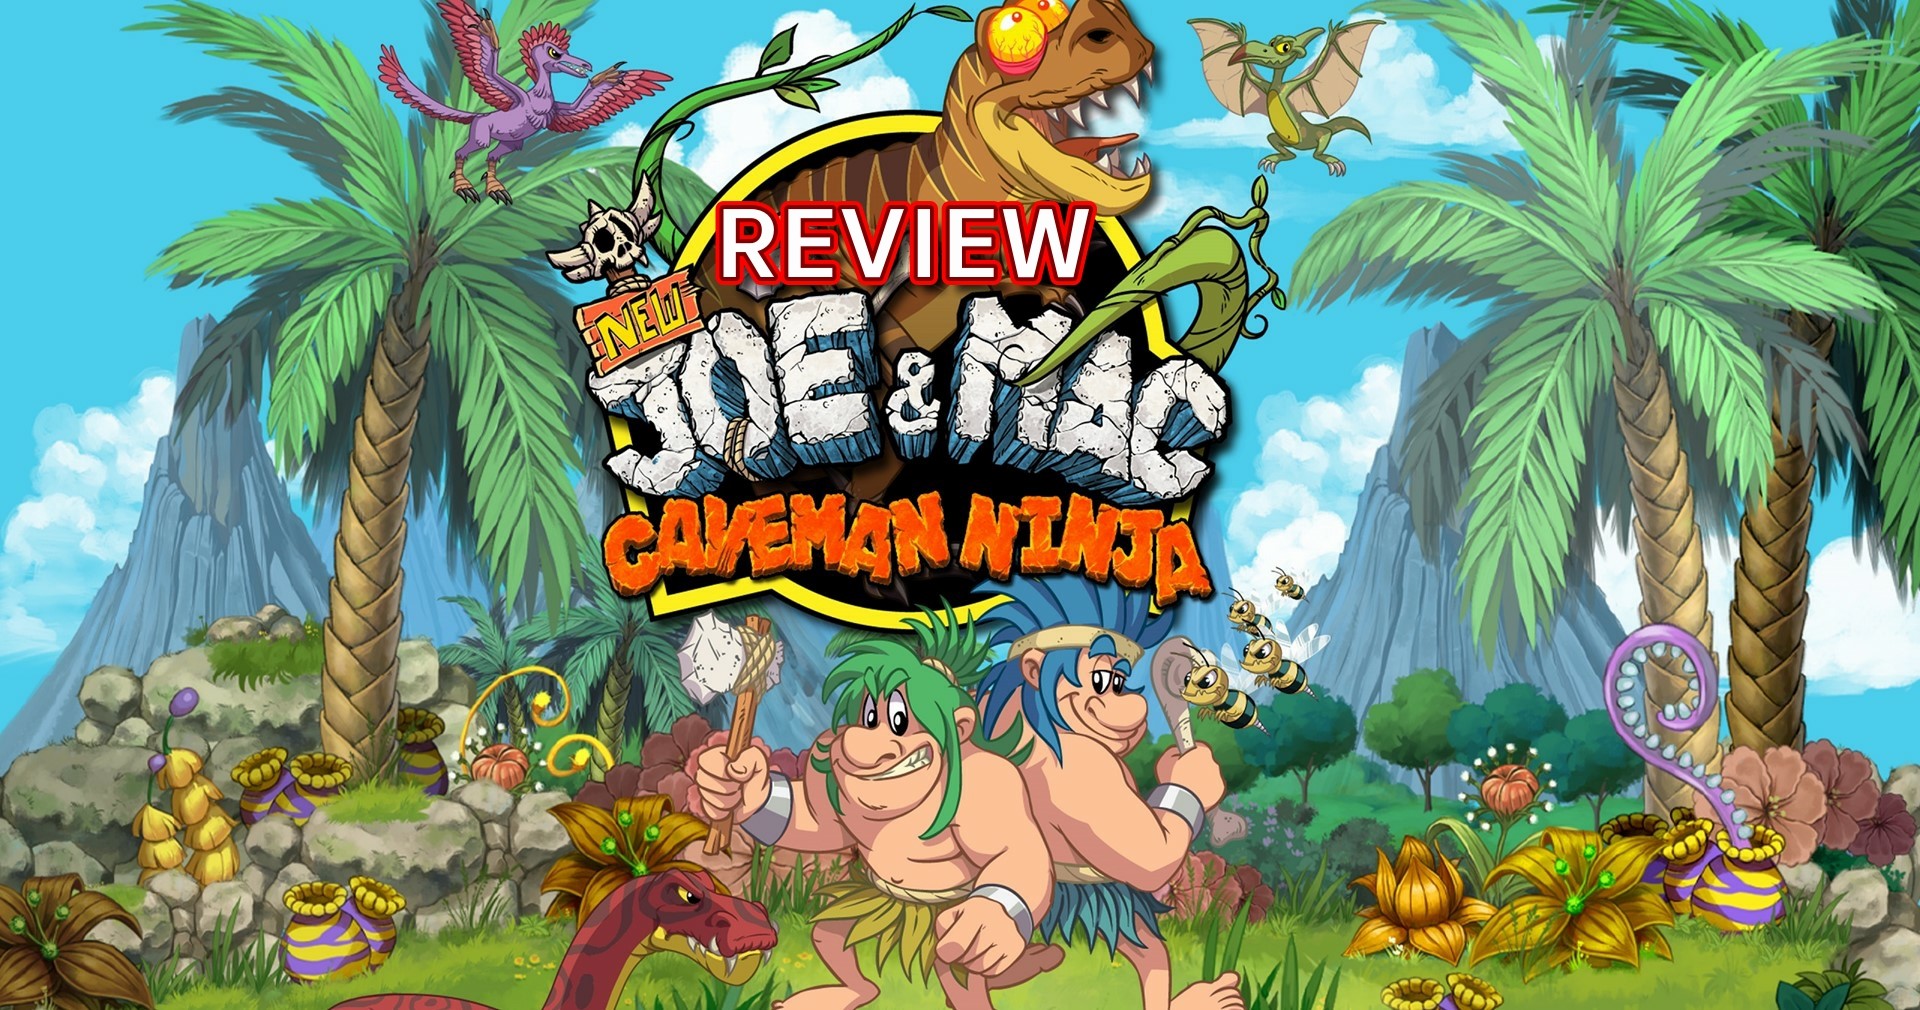 รีวิวเกม NEW Joe & Mac-Caveman Ninja ตำนานมนุษย์หินที่ตกยุคไปแล้ว